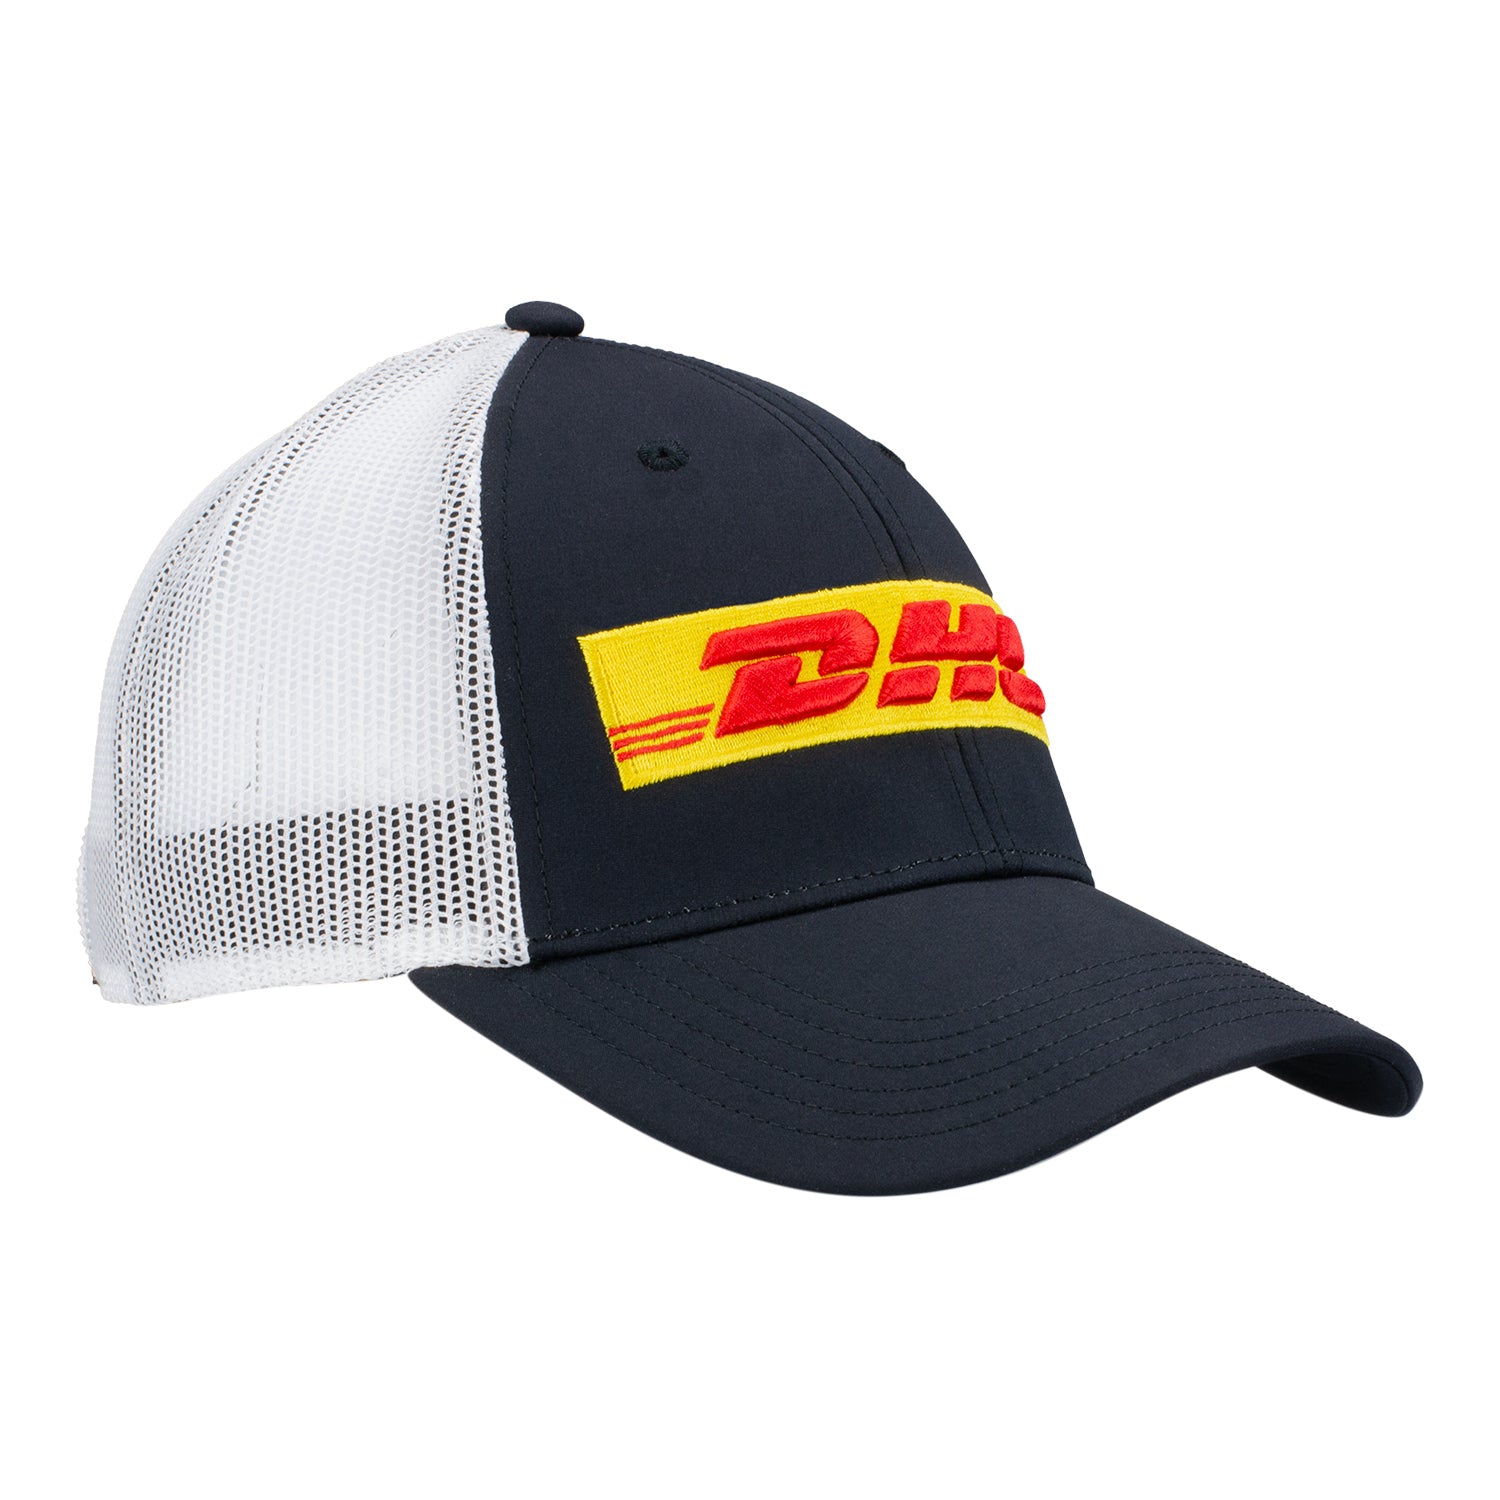 2023 Grosjean DHL Hat